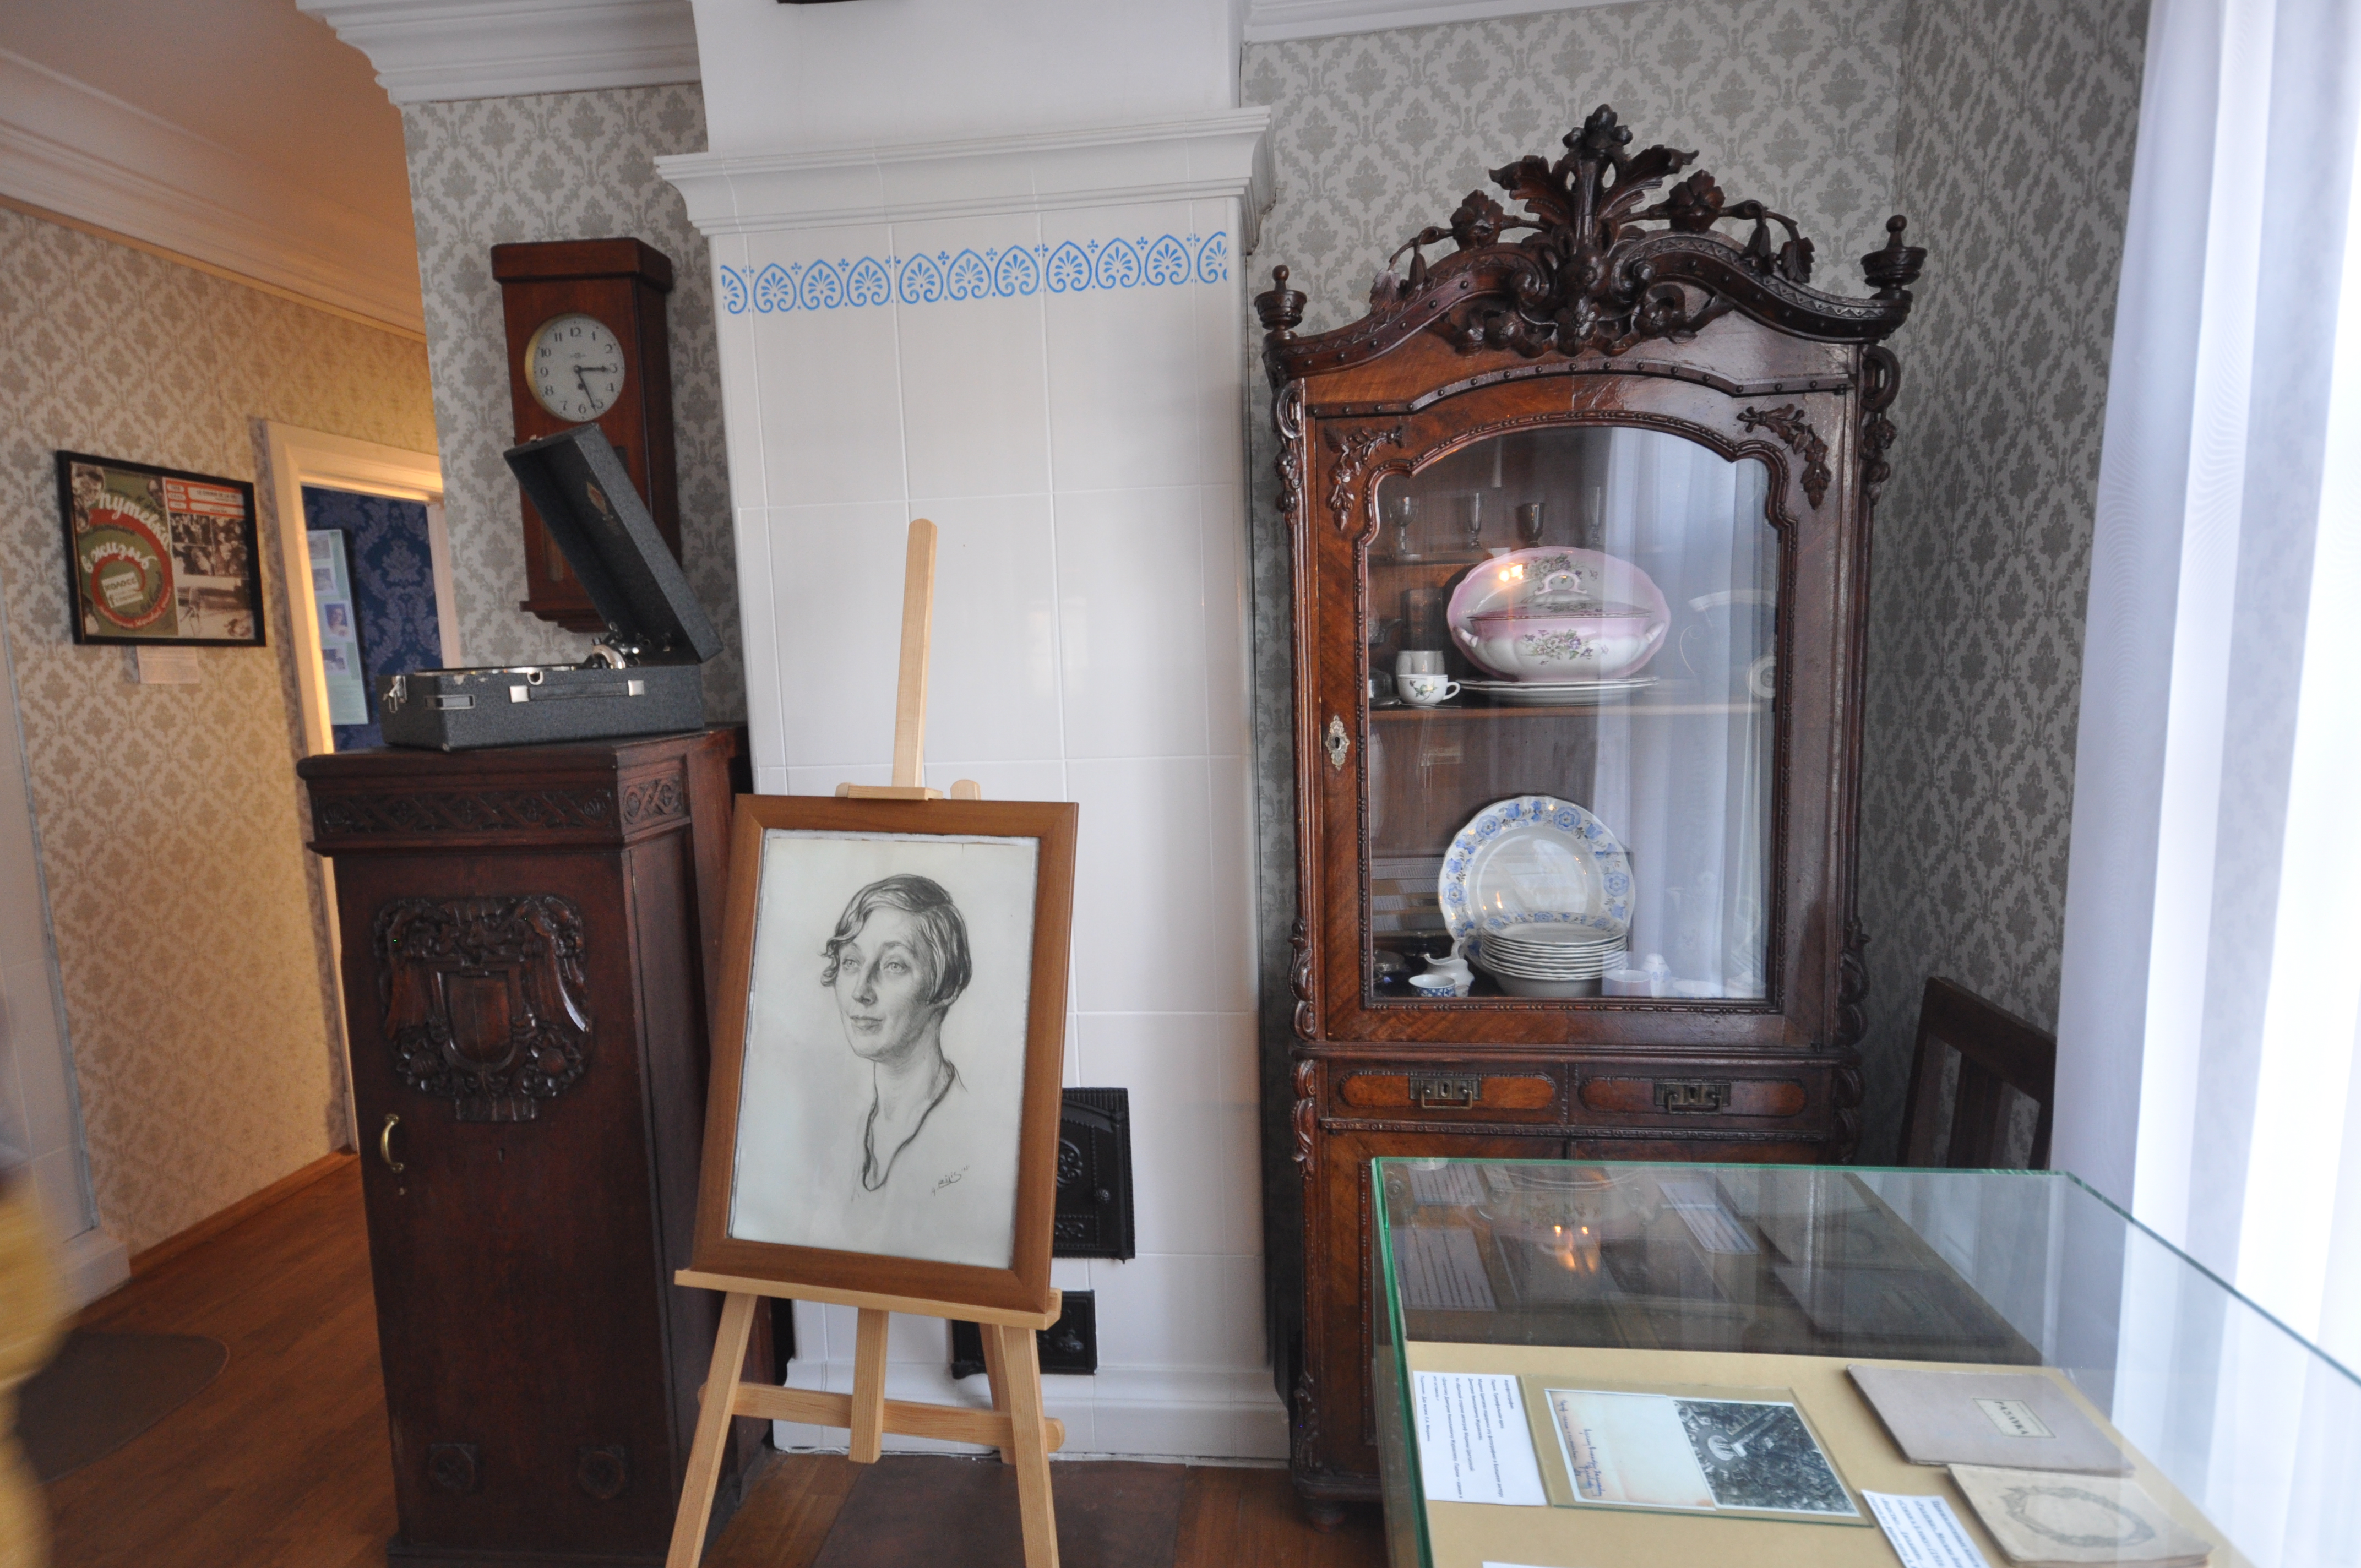 Мемориальный музей открылся в год столетия Цветаевой — в 1992 году